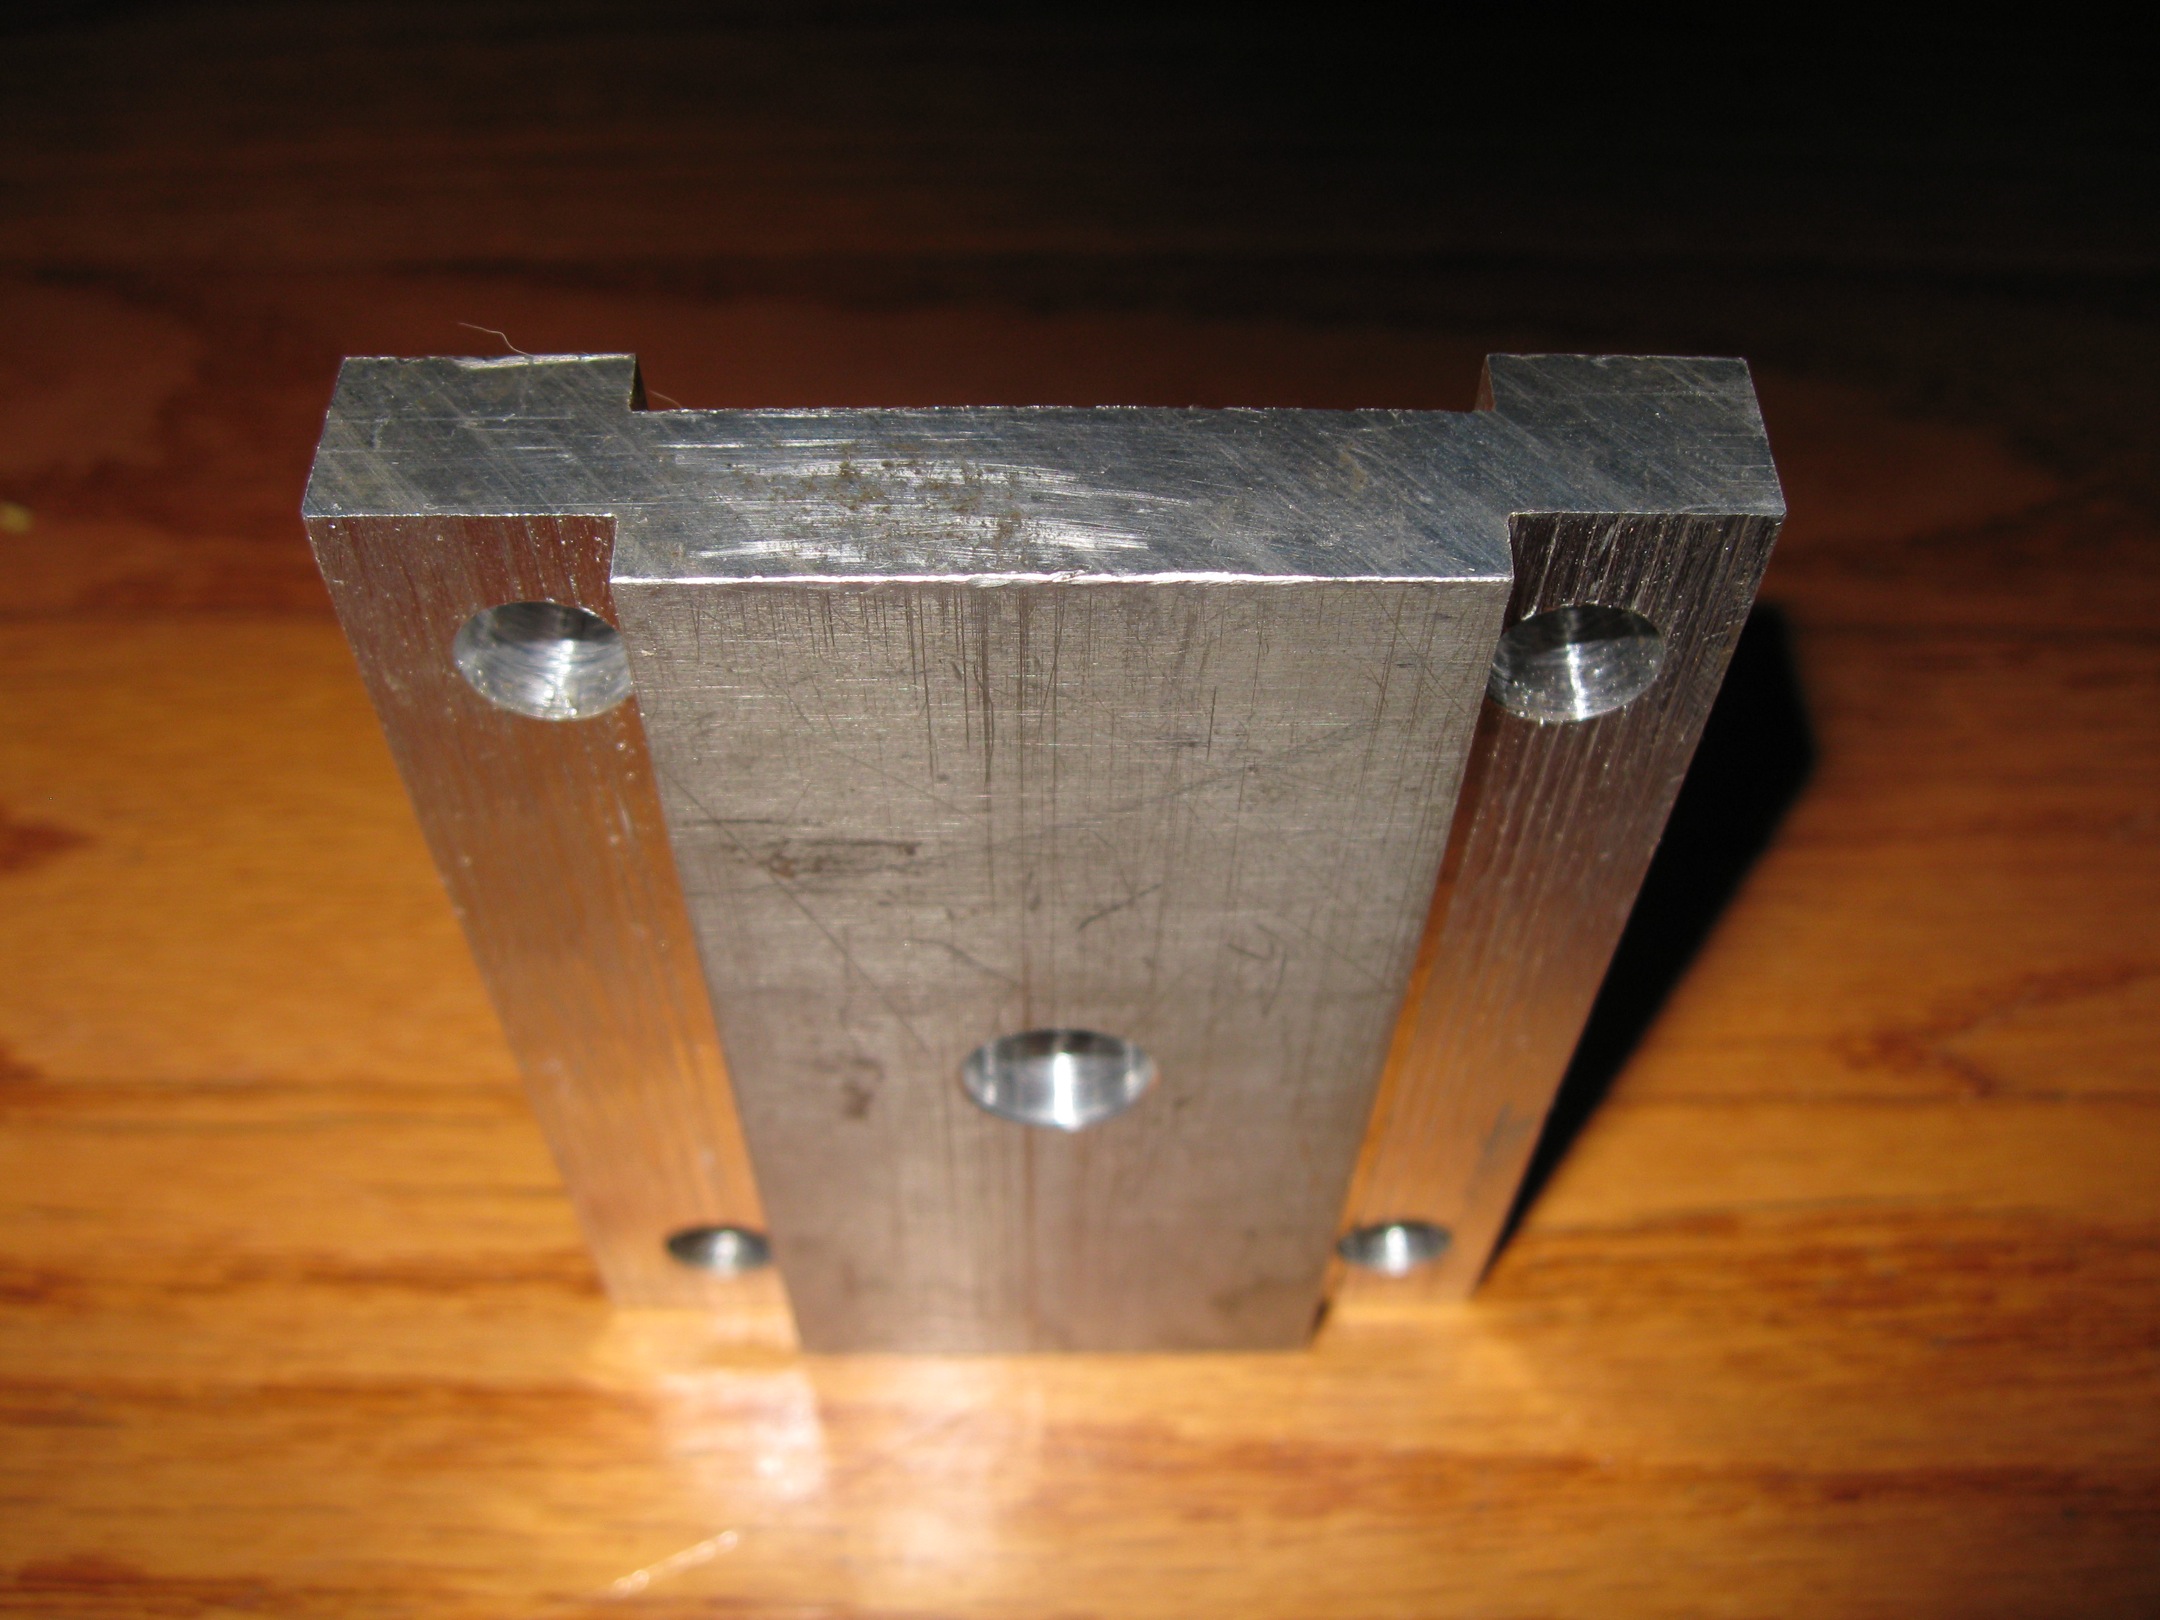 lowering block, aluminum, net 0.46 inches